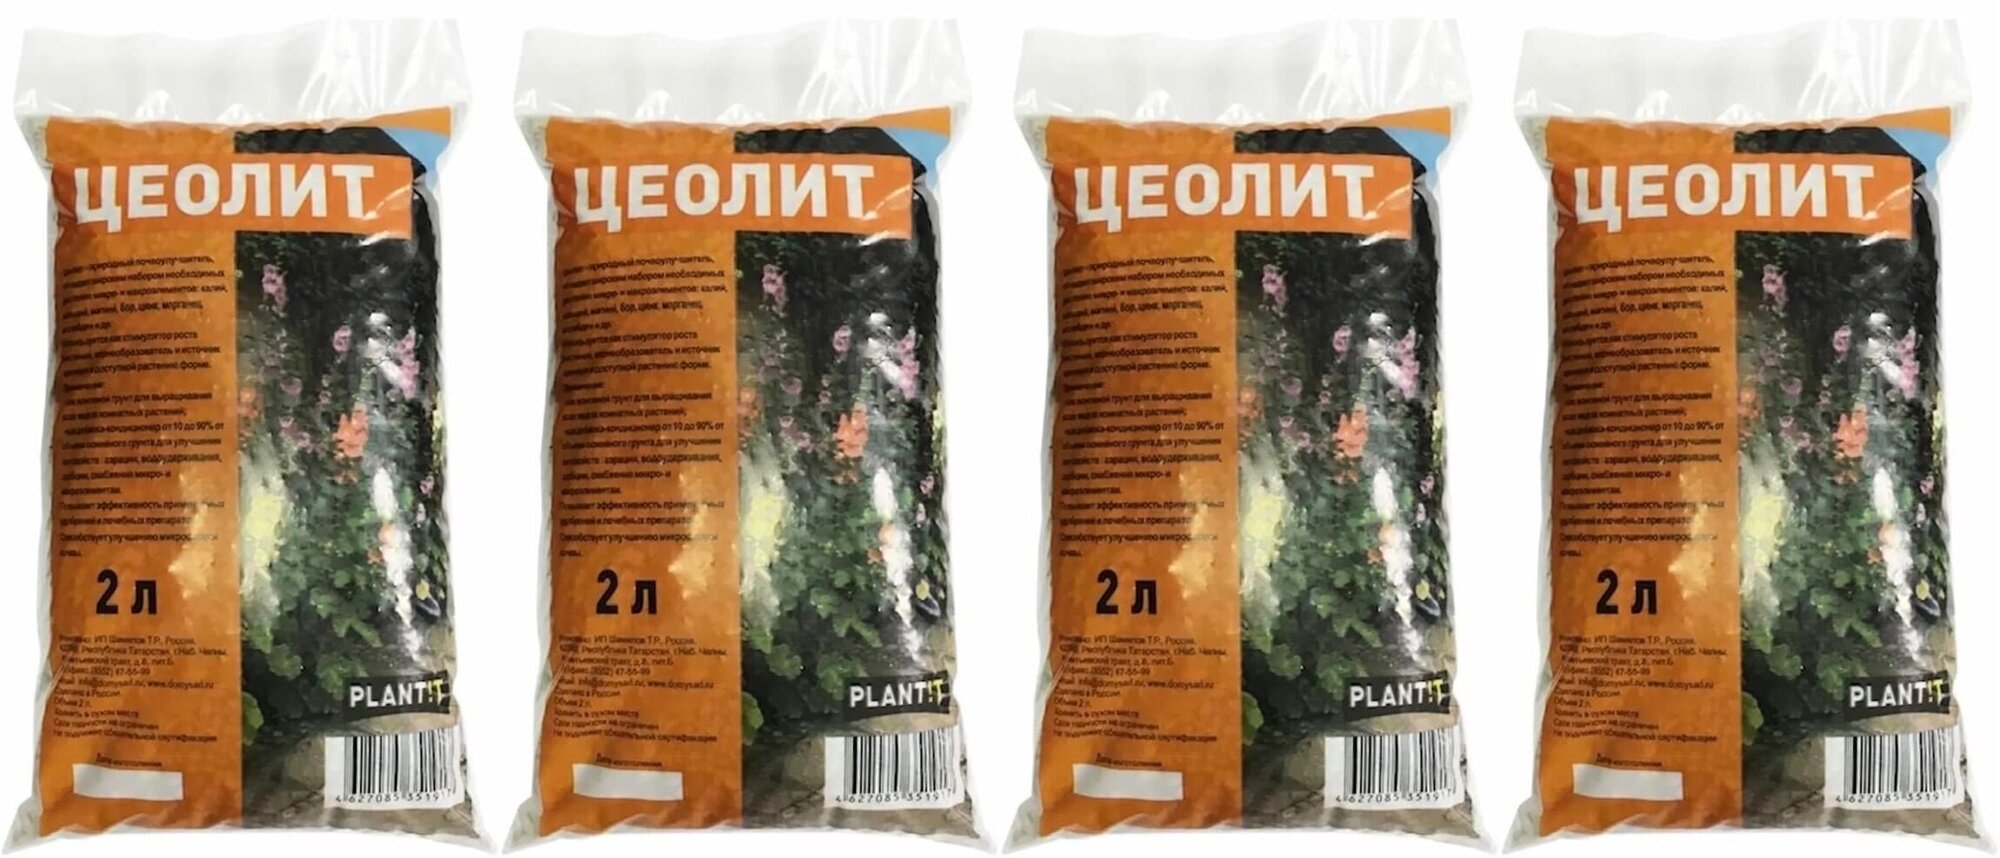 Удобрение Цеолит "PLANT!T", почвоулучшитель, минеральное, 2 л., 4 шт.